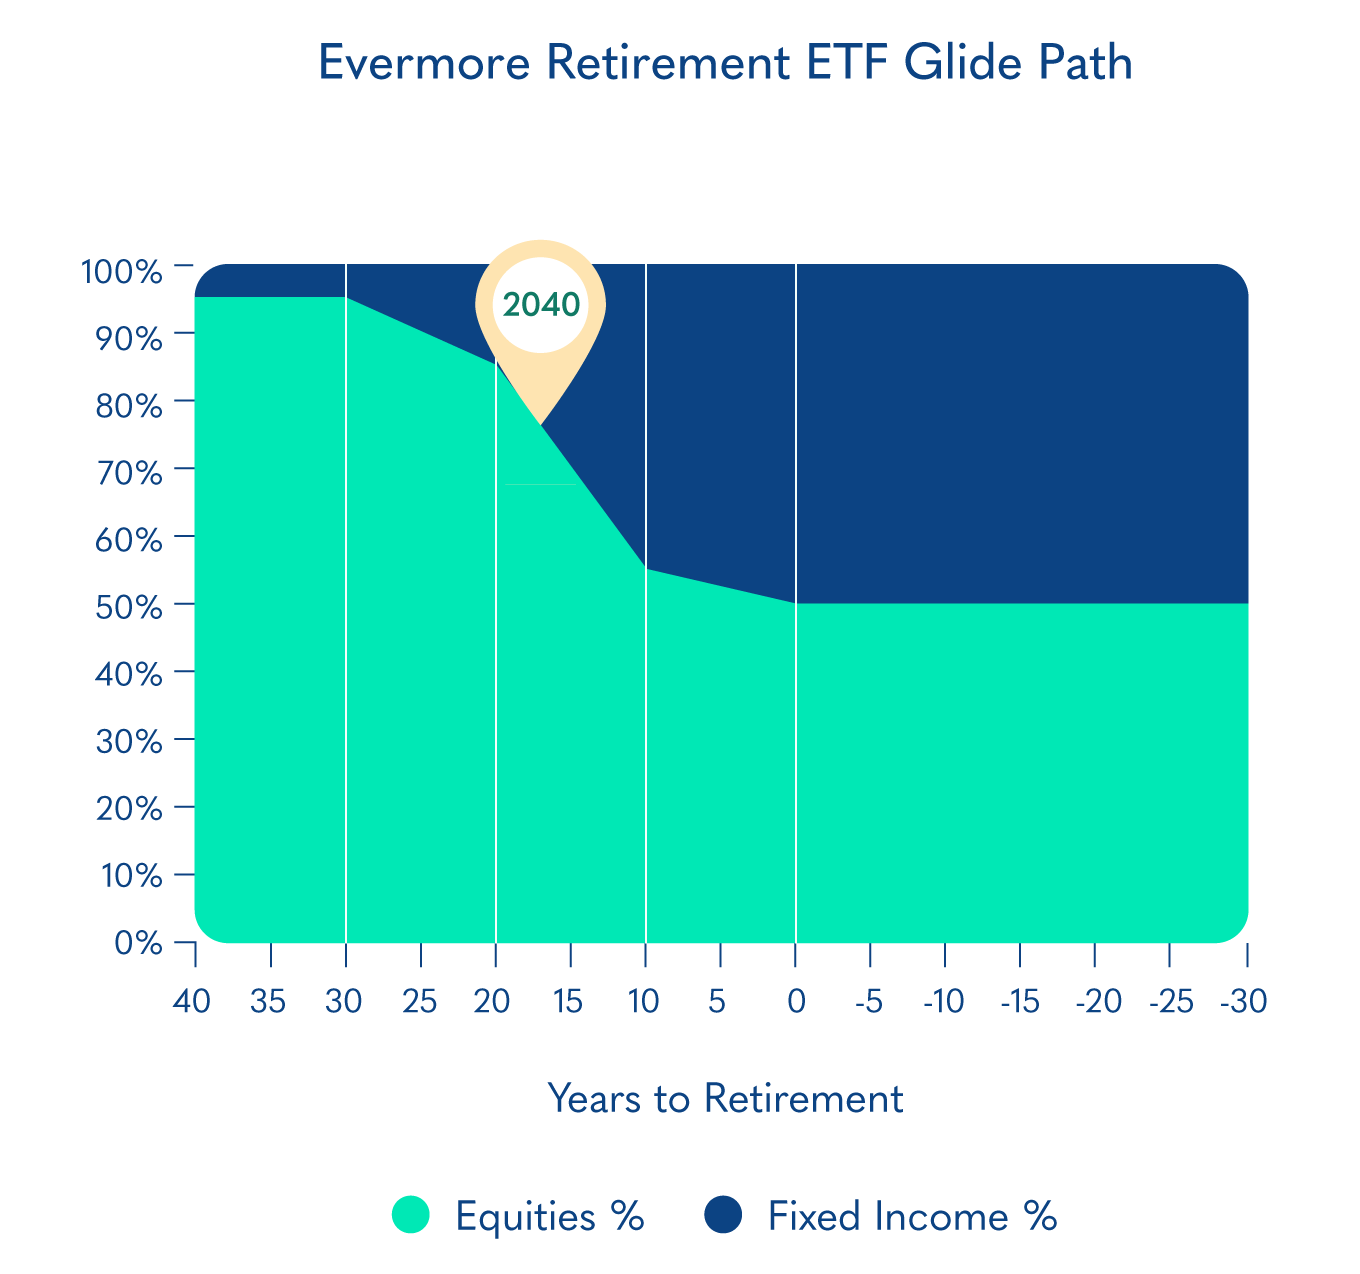 Evermore Retirement 2040 EREO Glide Path